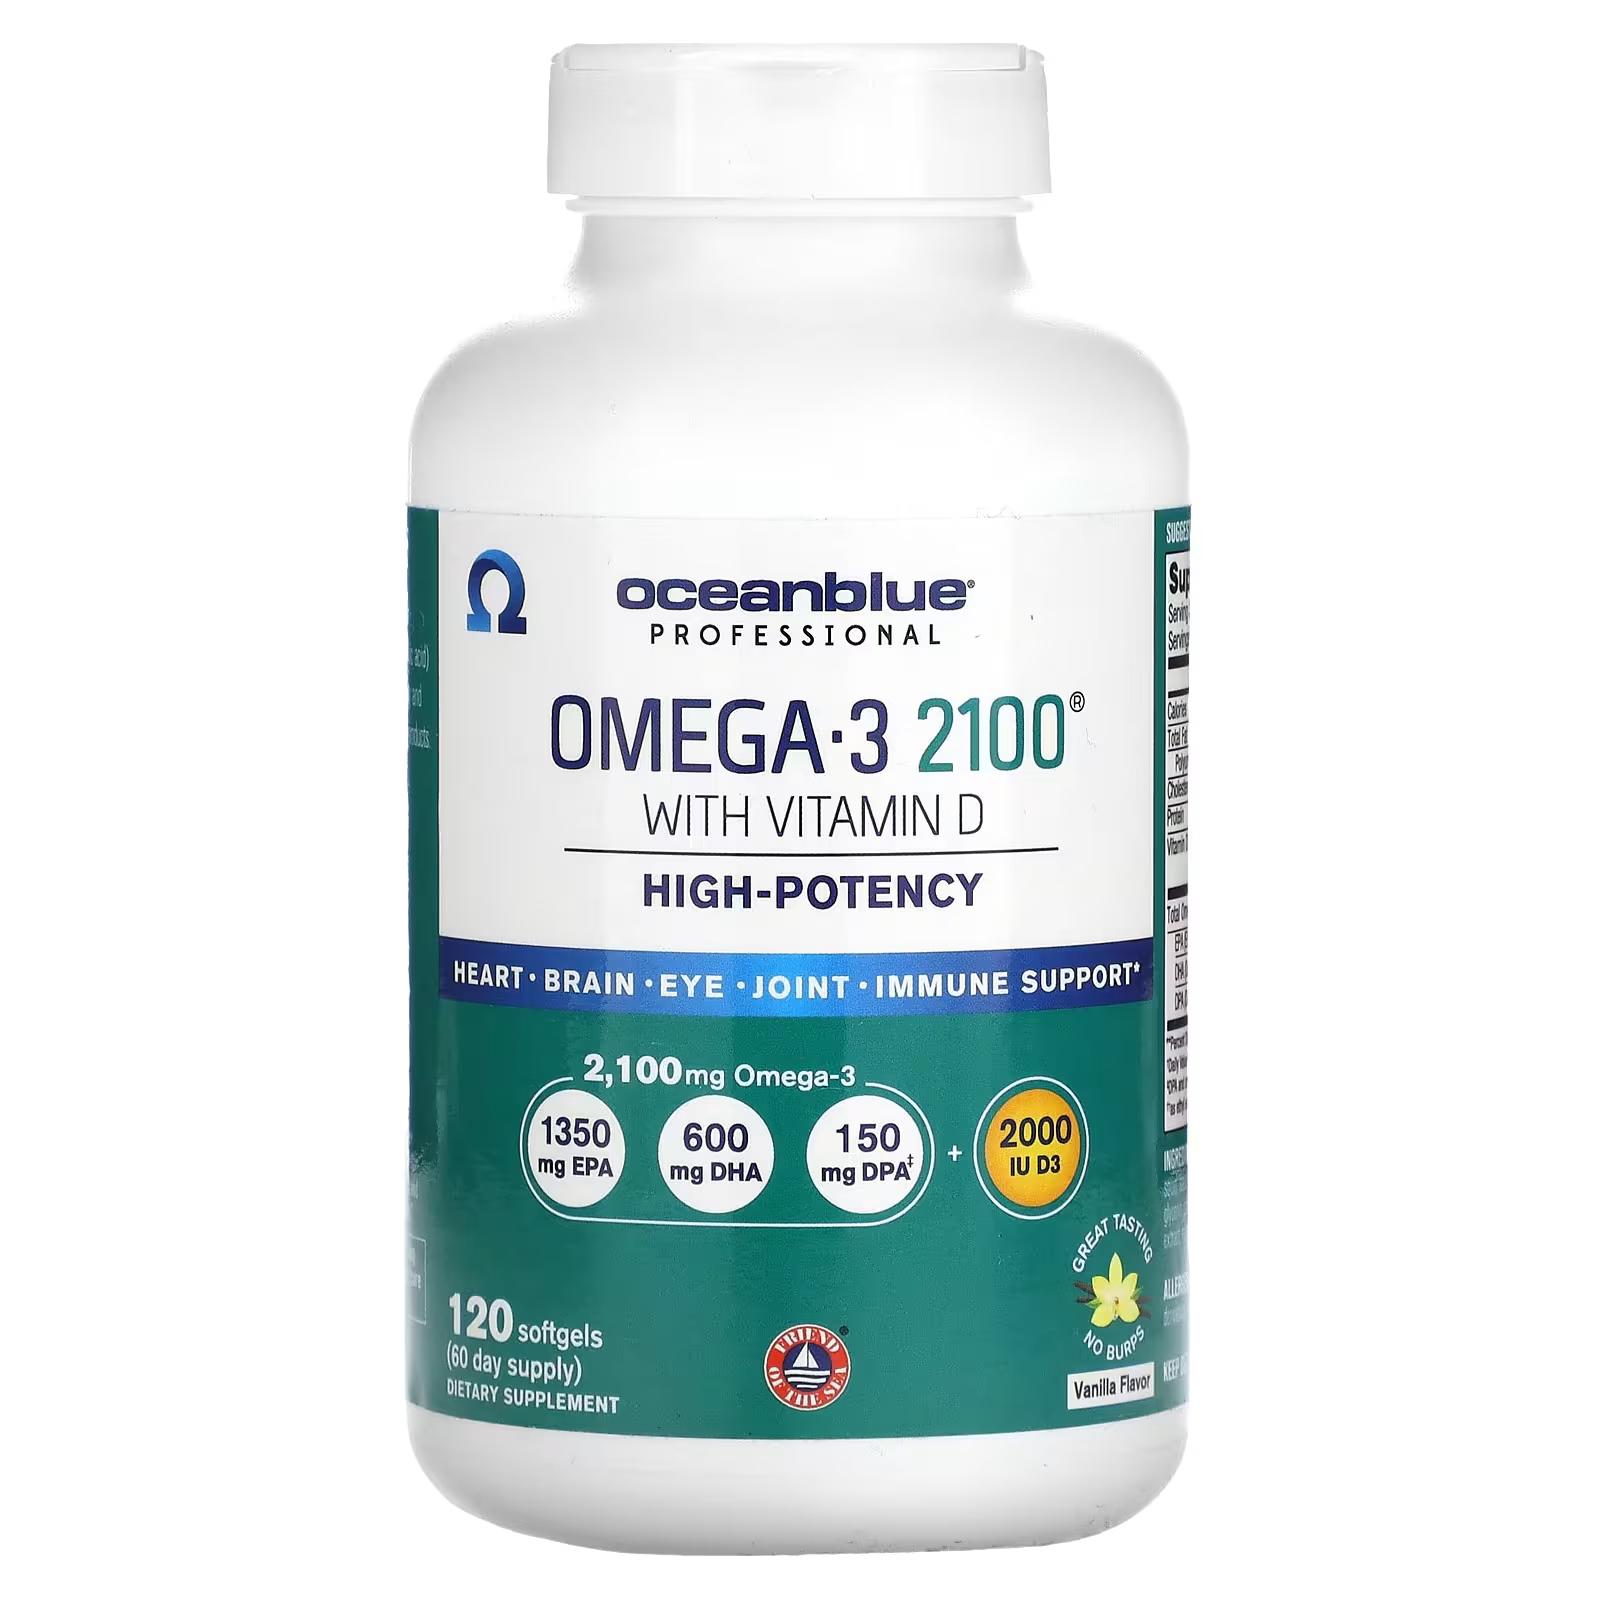 OceanBlue Professional Omega-3 2100 с высокоэффективным витамином D и ванилью, 120 мягких таблеток